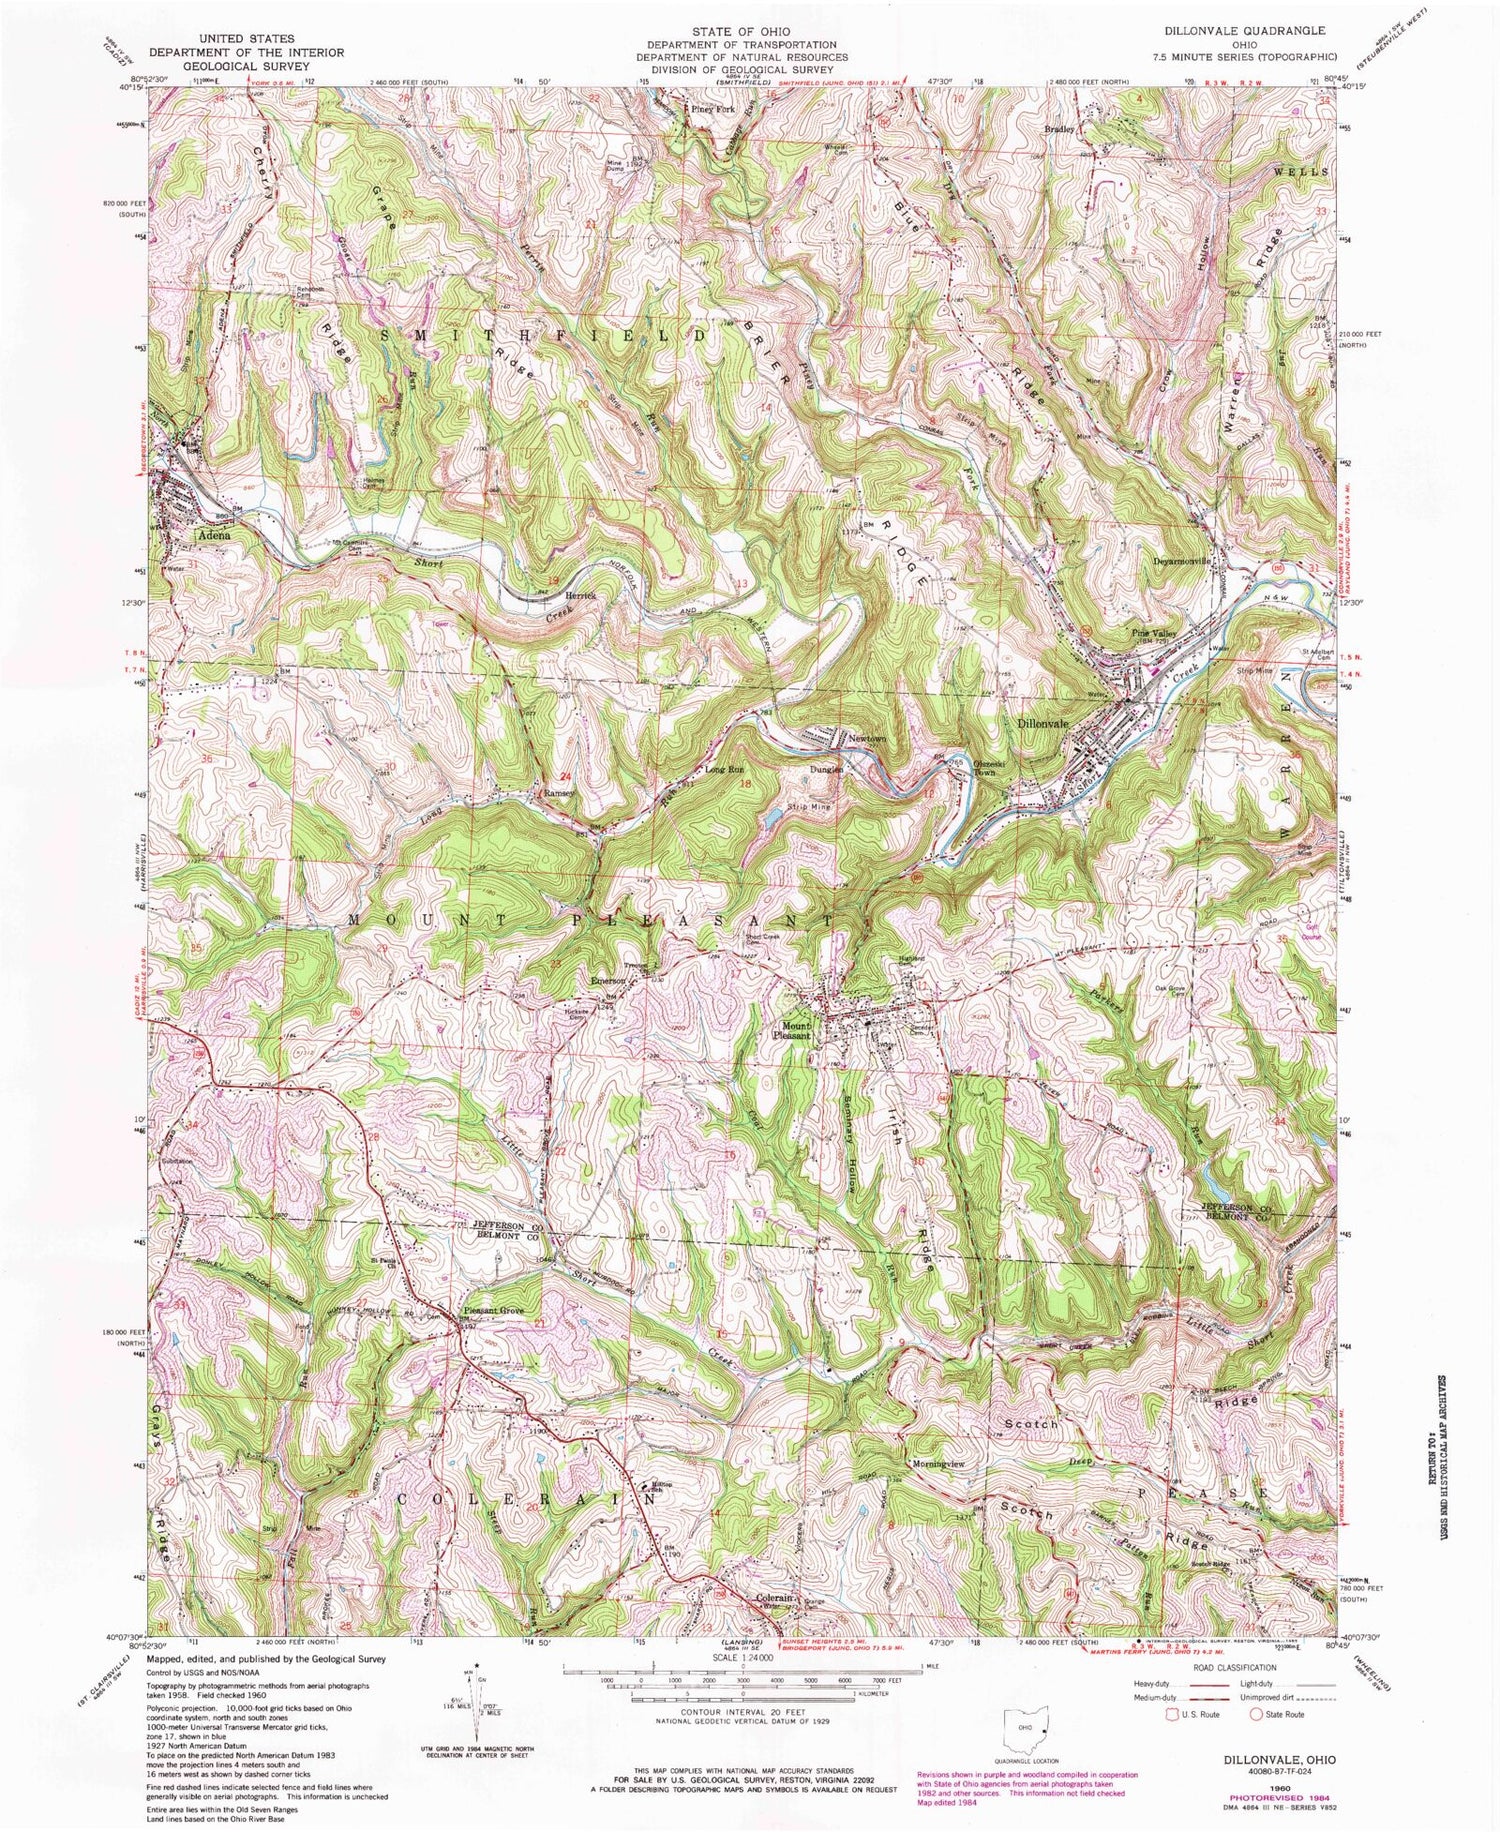 Classic USGS Dillonvale Ohio 7.5'x7.5' Topo Map Image